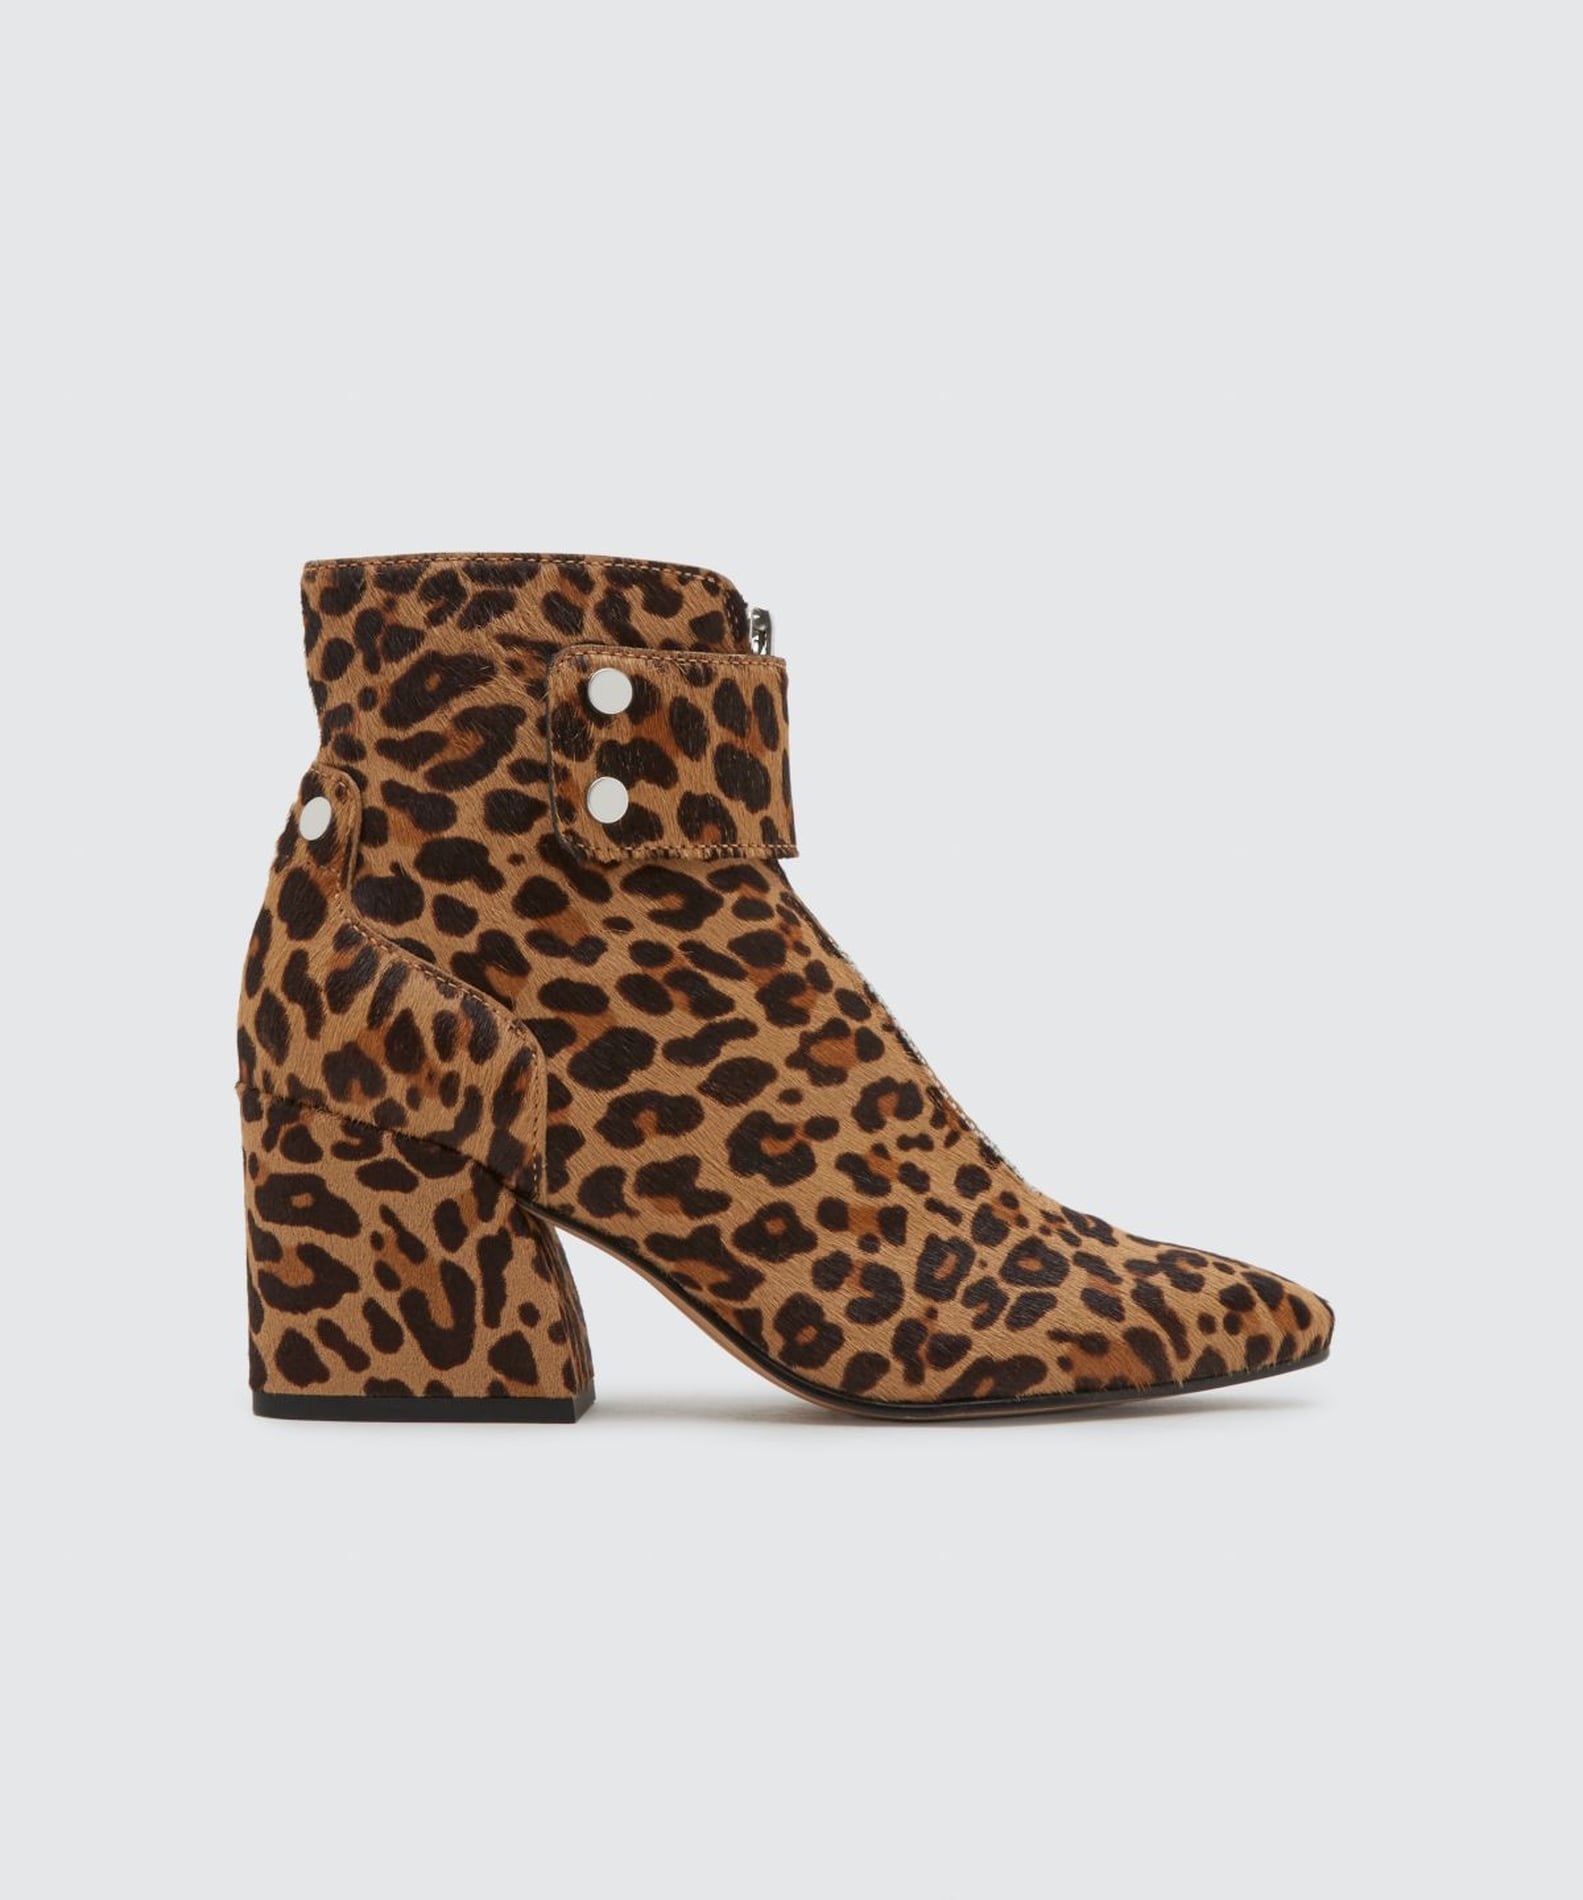 Gigi Hadid Leopard Boots | POPSUGAR Fashion